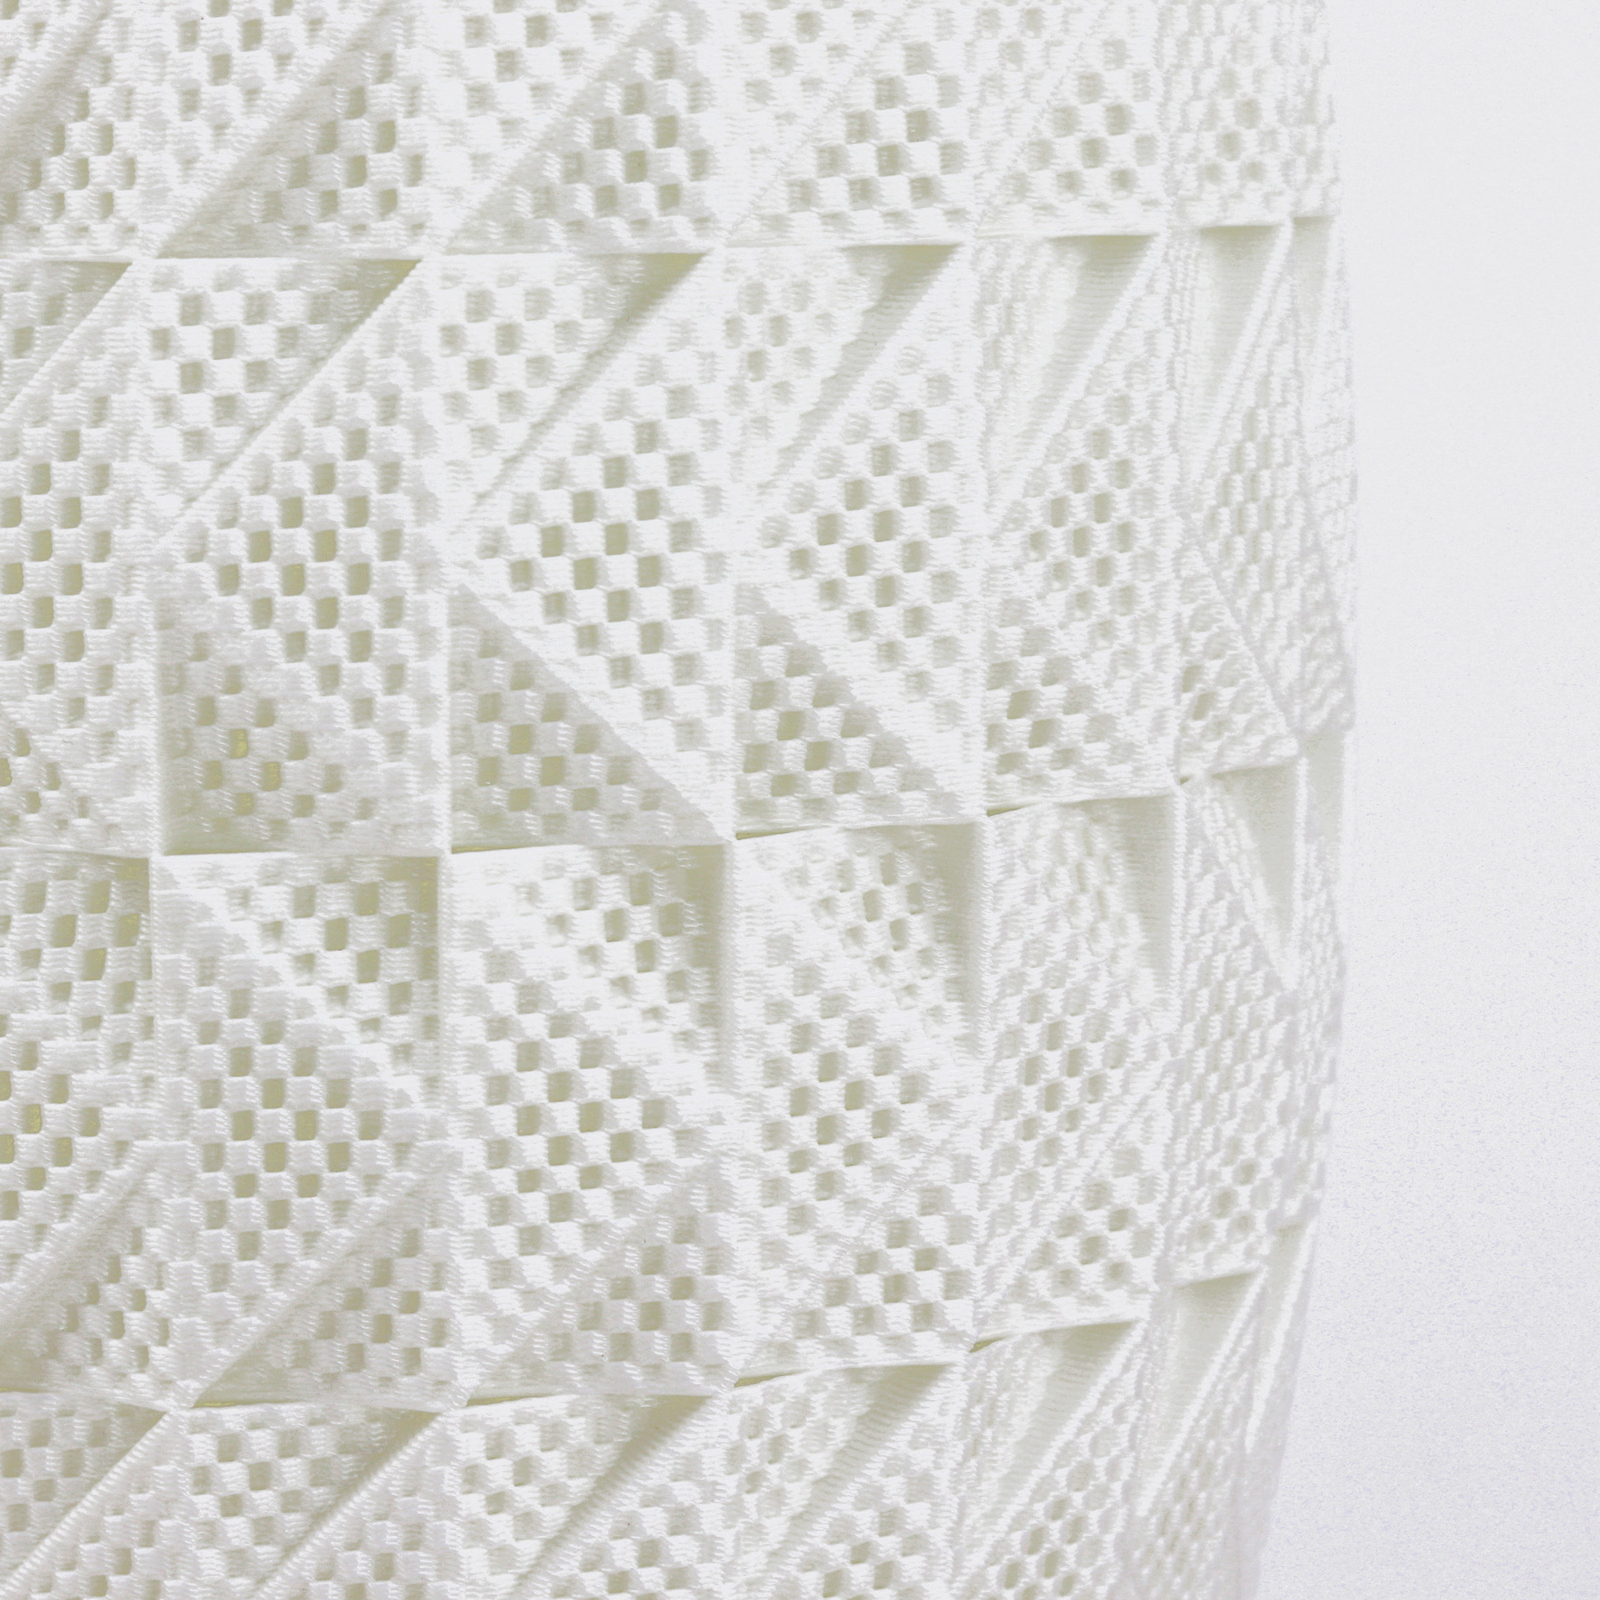 Fraktal tafellamp gemaakt van biomateriaal, zijde, 65 cm